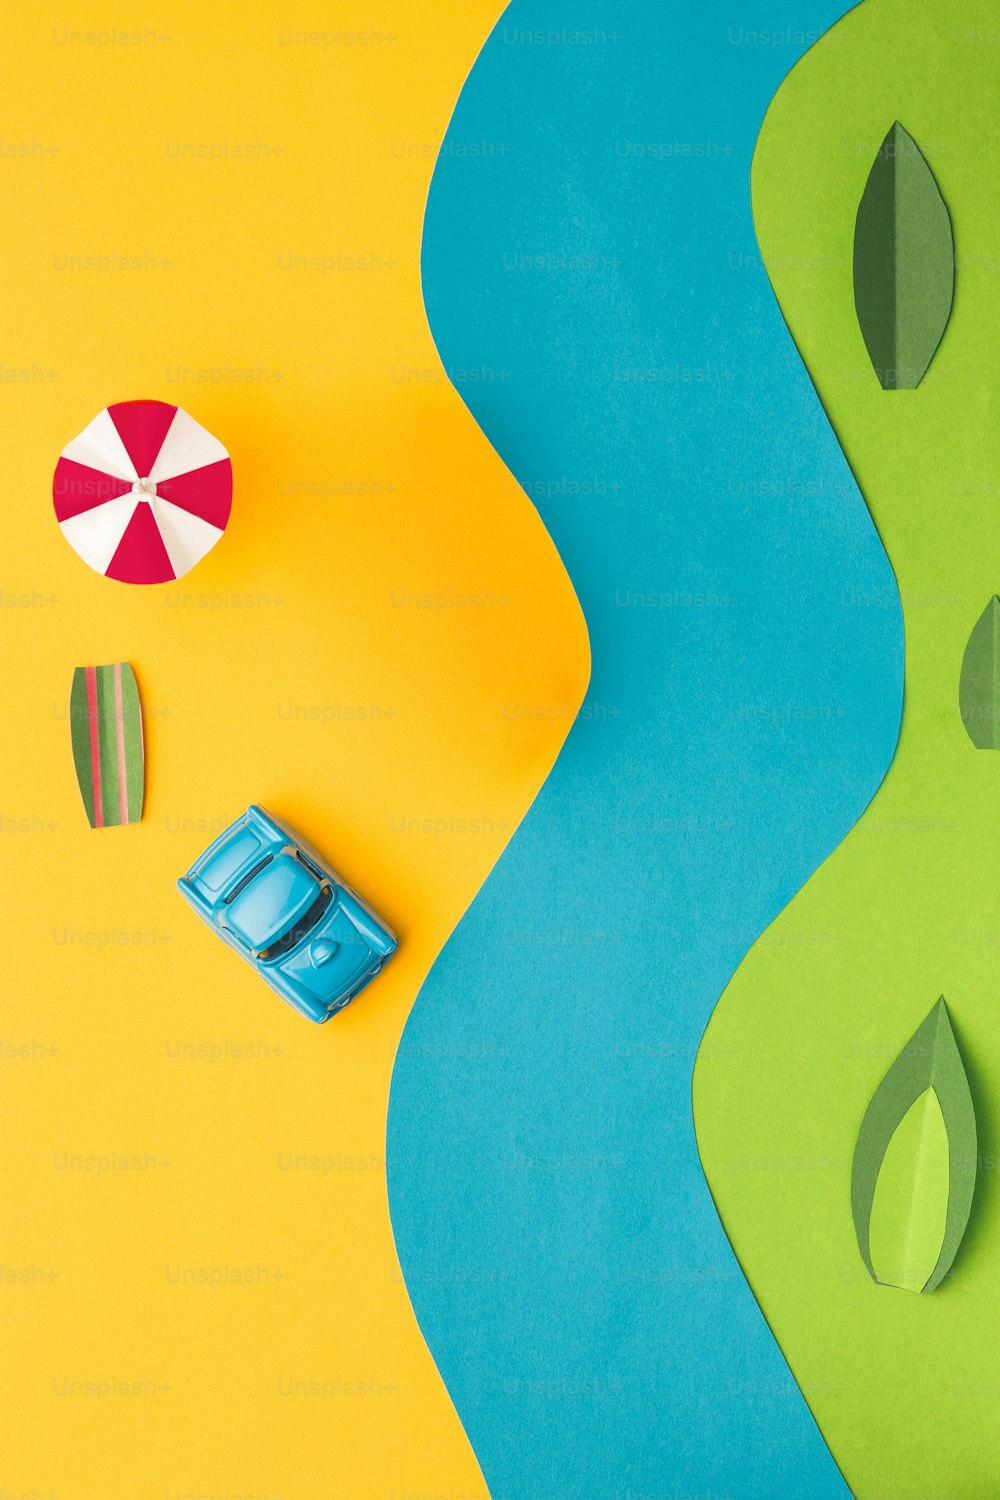 Los juguetes: automóvil y autobús en miniatura vintage en papel de colores modernos. El concepto de arte pop y creatividad. El concepto vacaciones, viaje, viaje, fin de semana, vacaciones